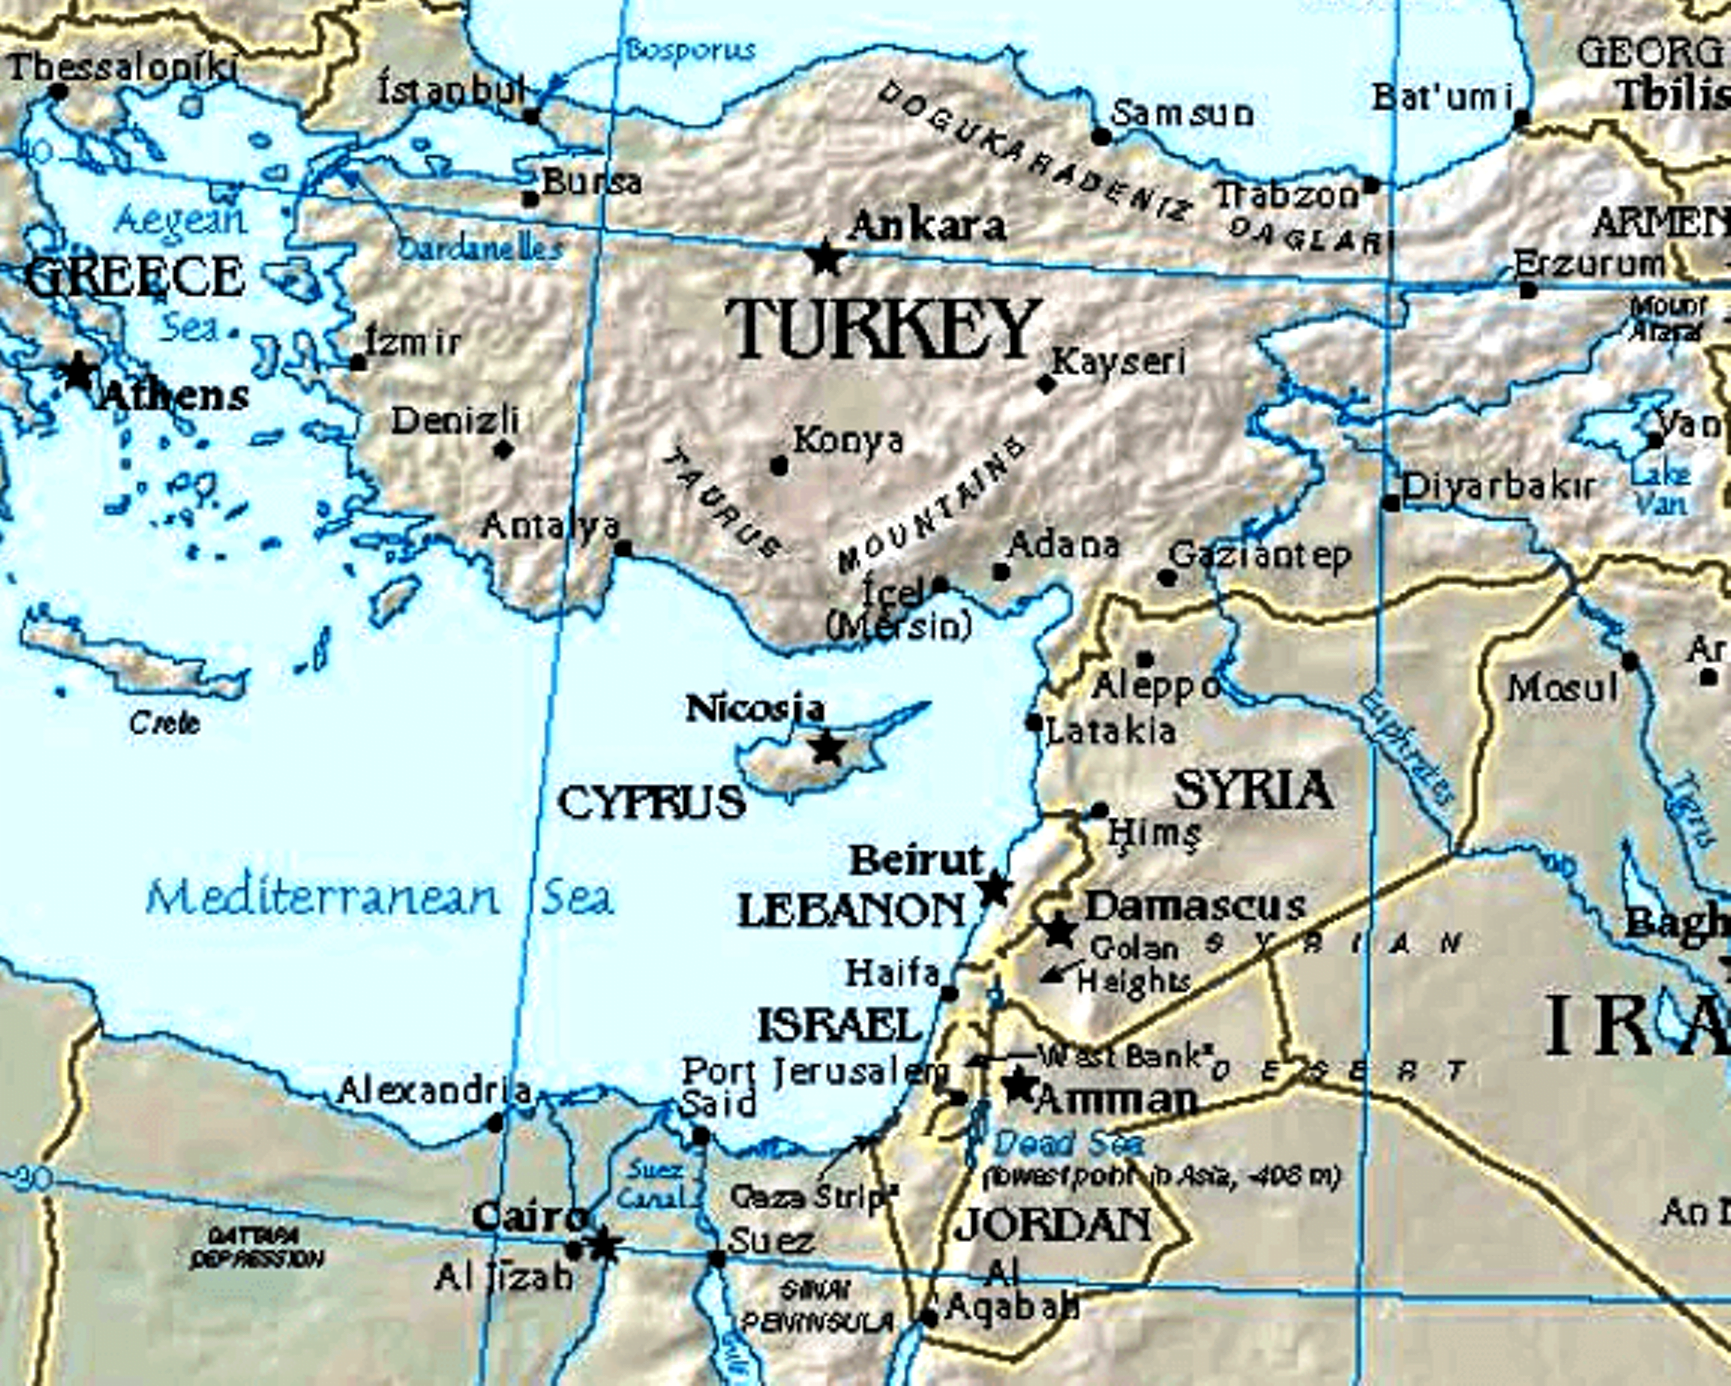 Επικίνδυνη σύγχυση, επικίνδυνη εξάρτηση. H οριοθέτηση Ελλάδας – Κύπρου, ο EastMed και η διέξοδος ενός μορατόριουμ